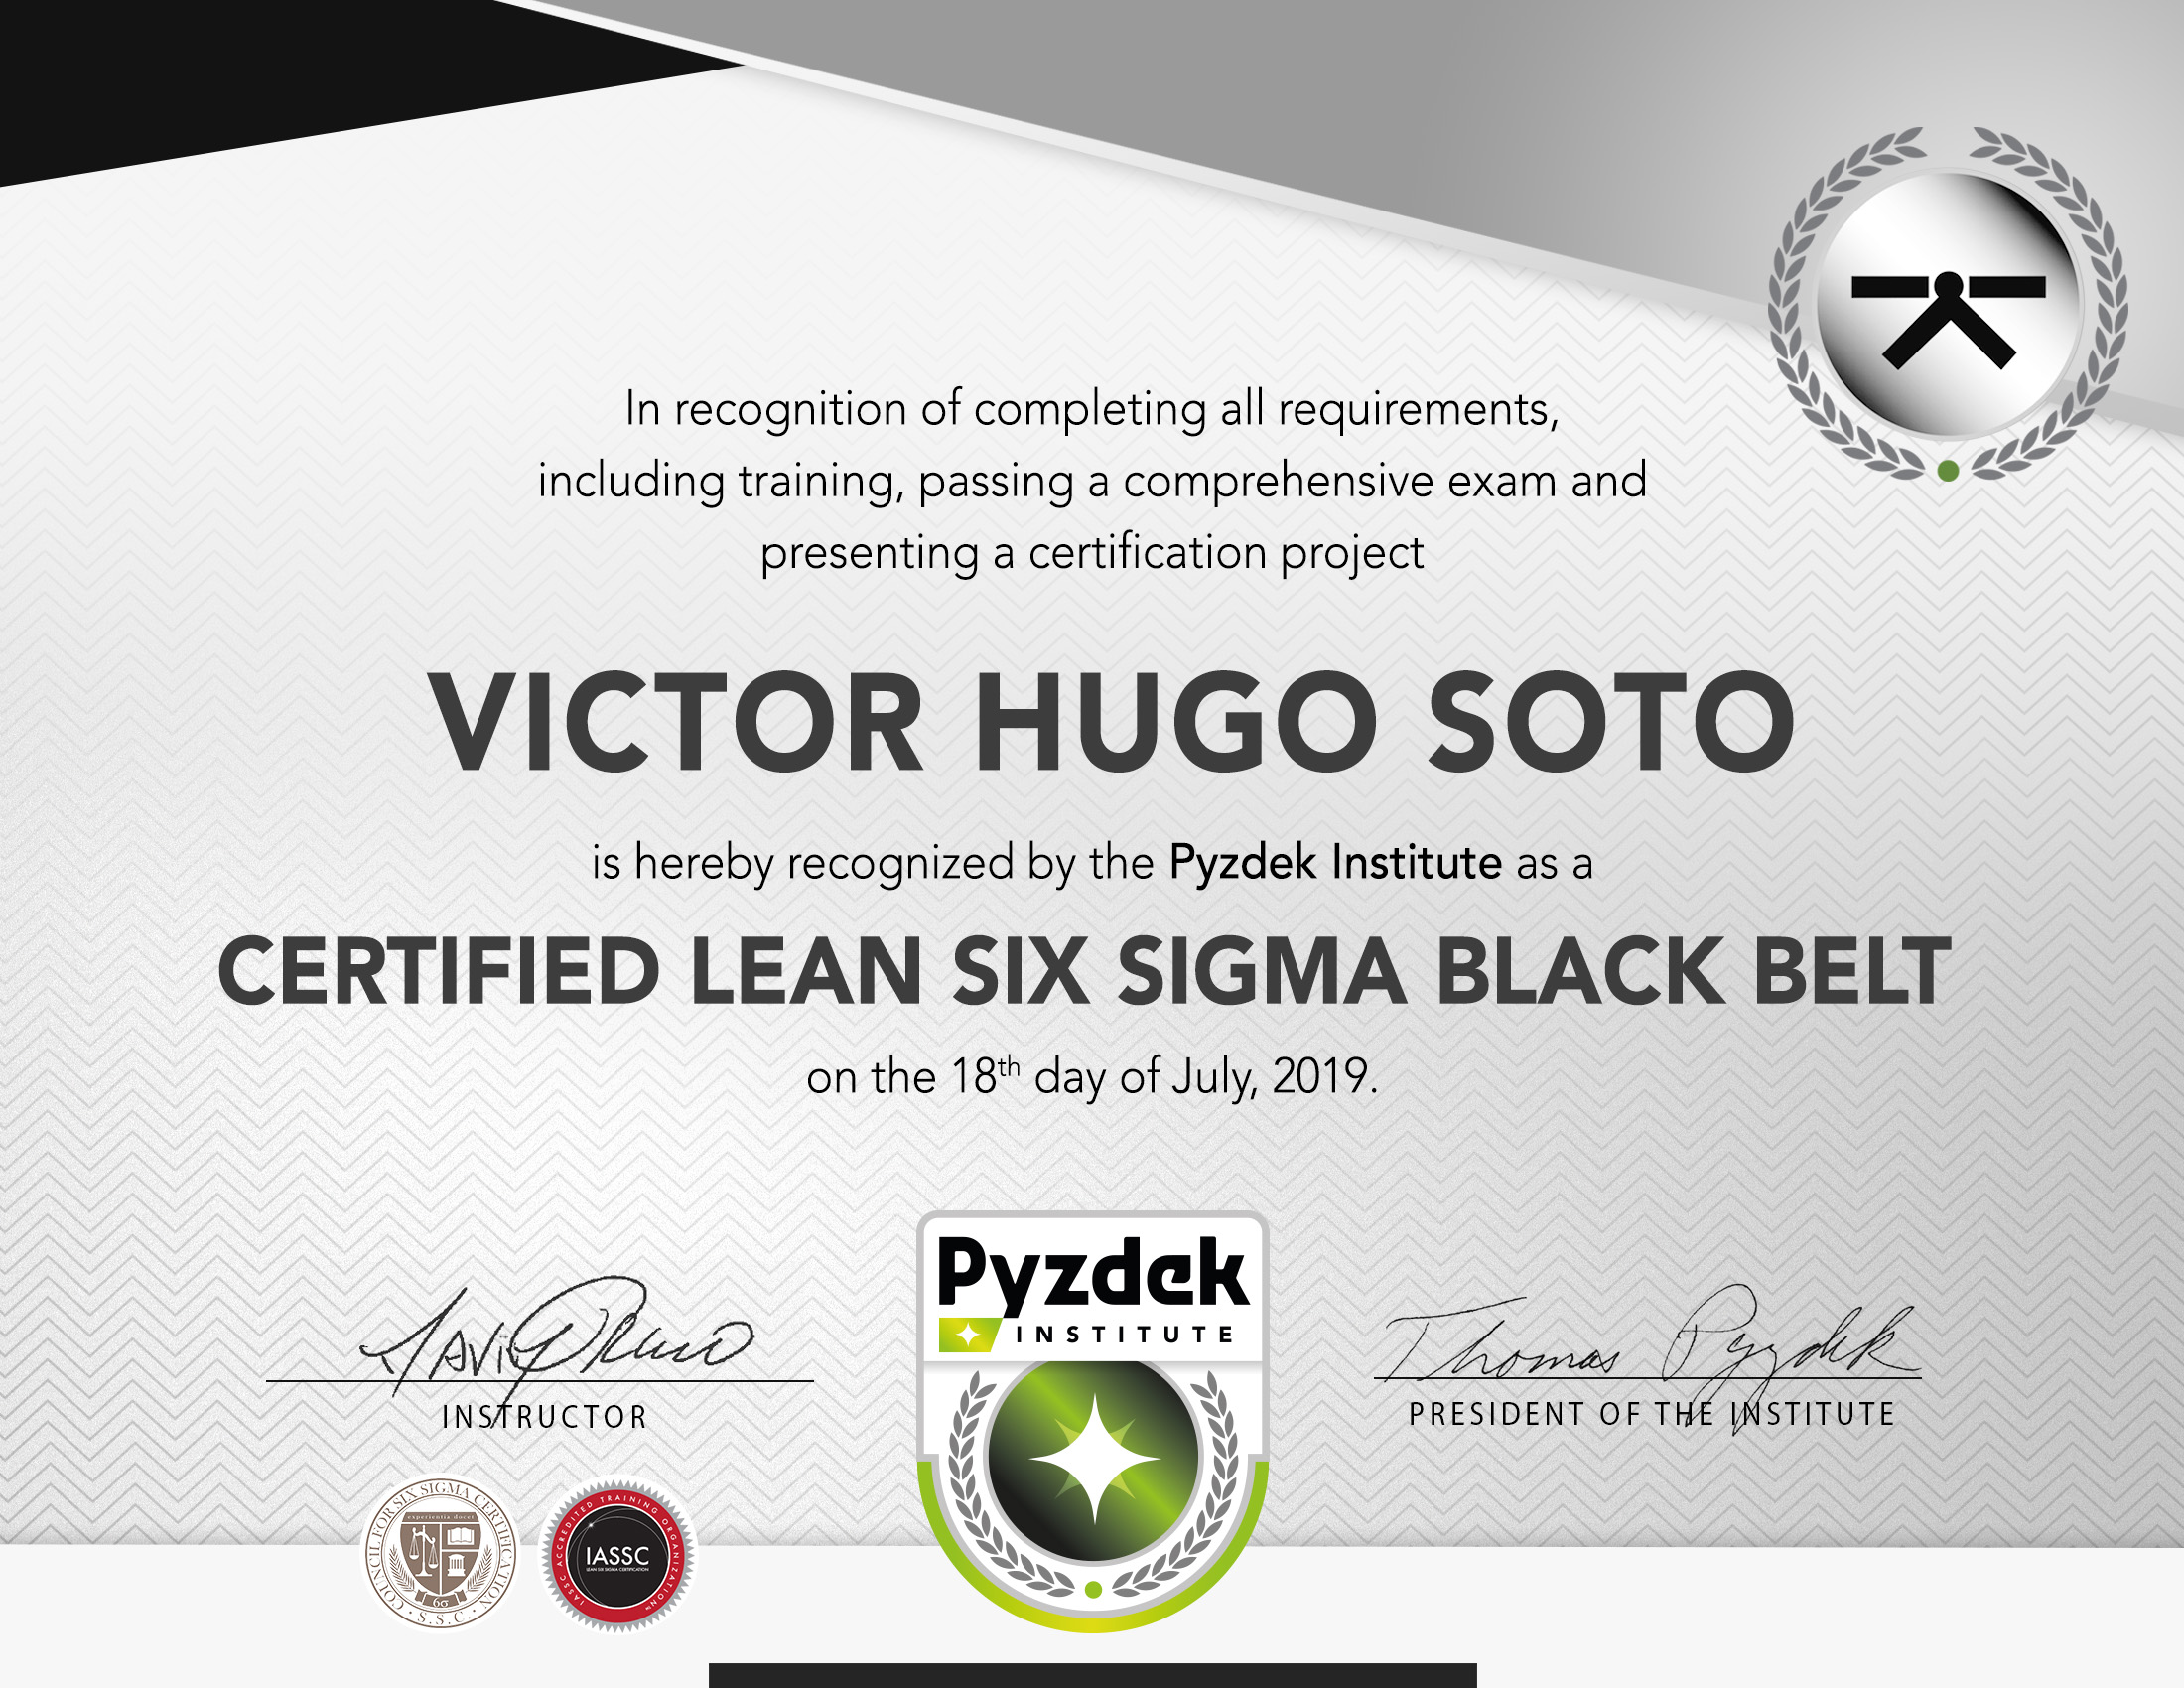 Victor Hugo Soto Lean Six Sigma Black Belt Certification